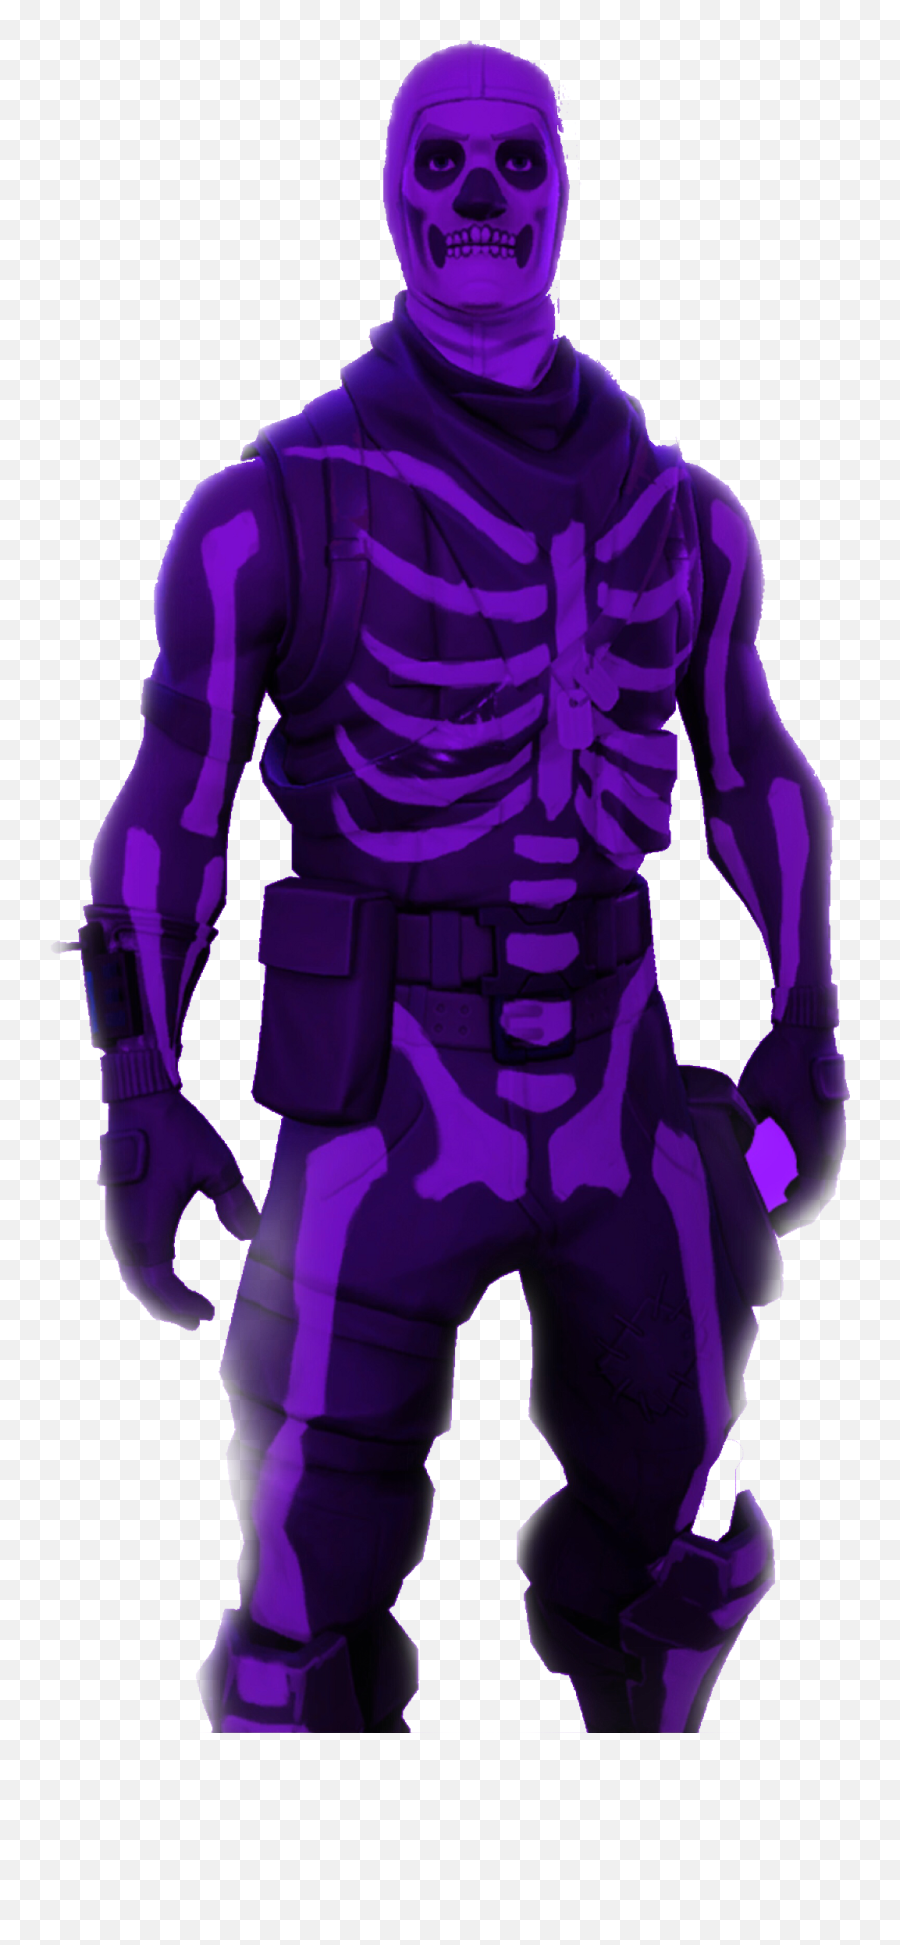 Hd Wallpaper Purple Purple Purple Skull Trooper - Fortnite Skull Trooper Png Emoji,Skull Trooper Png